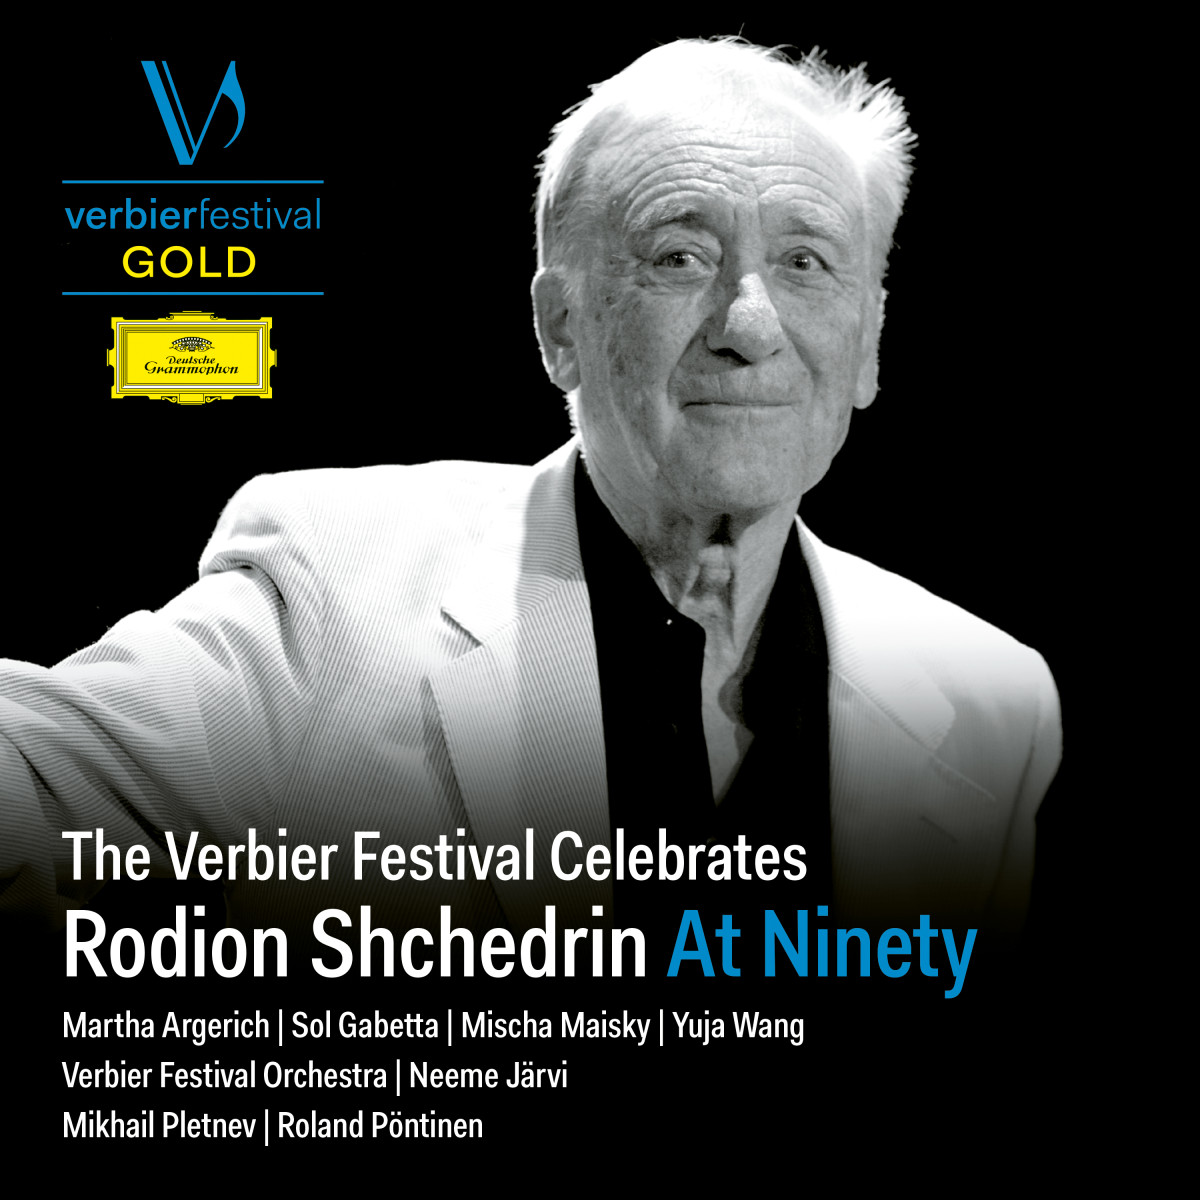 Rodion Shchedrin – At Ninety